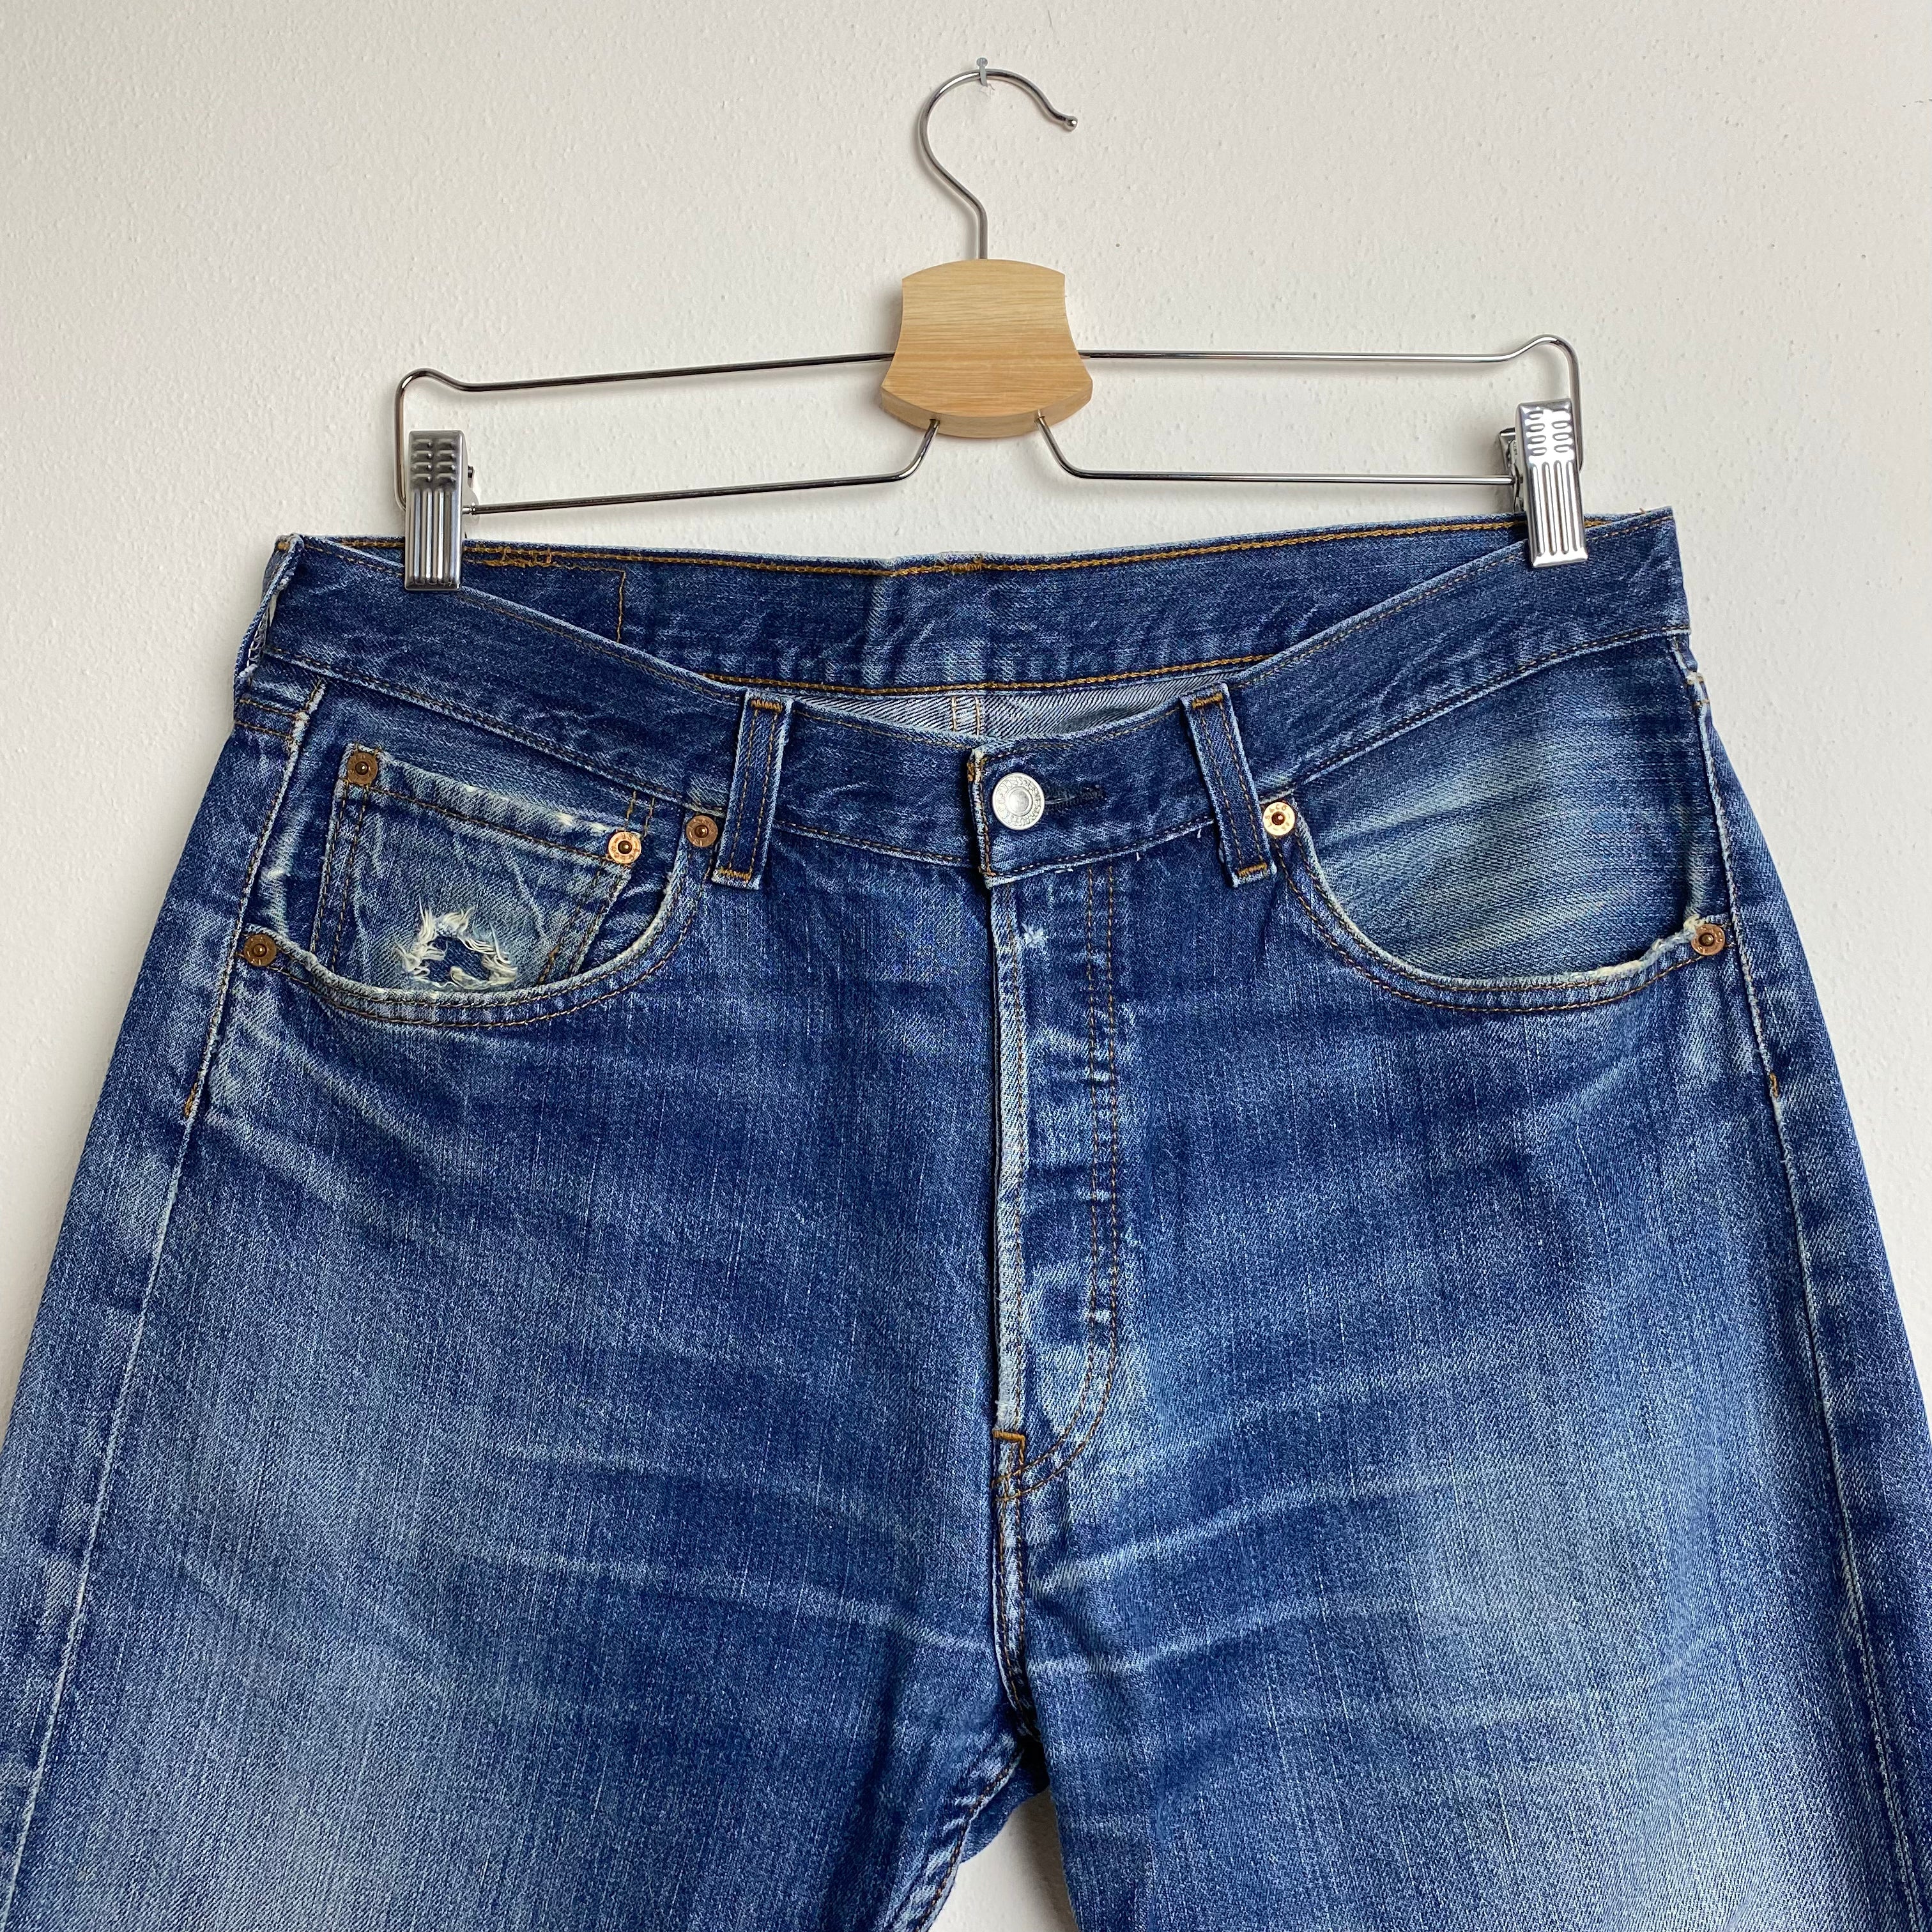 Jeans Levi's 501 Vintage W30 L34 Antique Pantalon jeans Made in